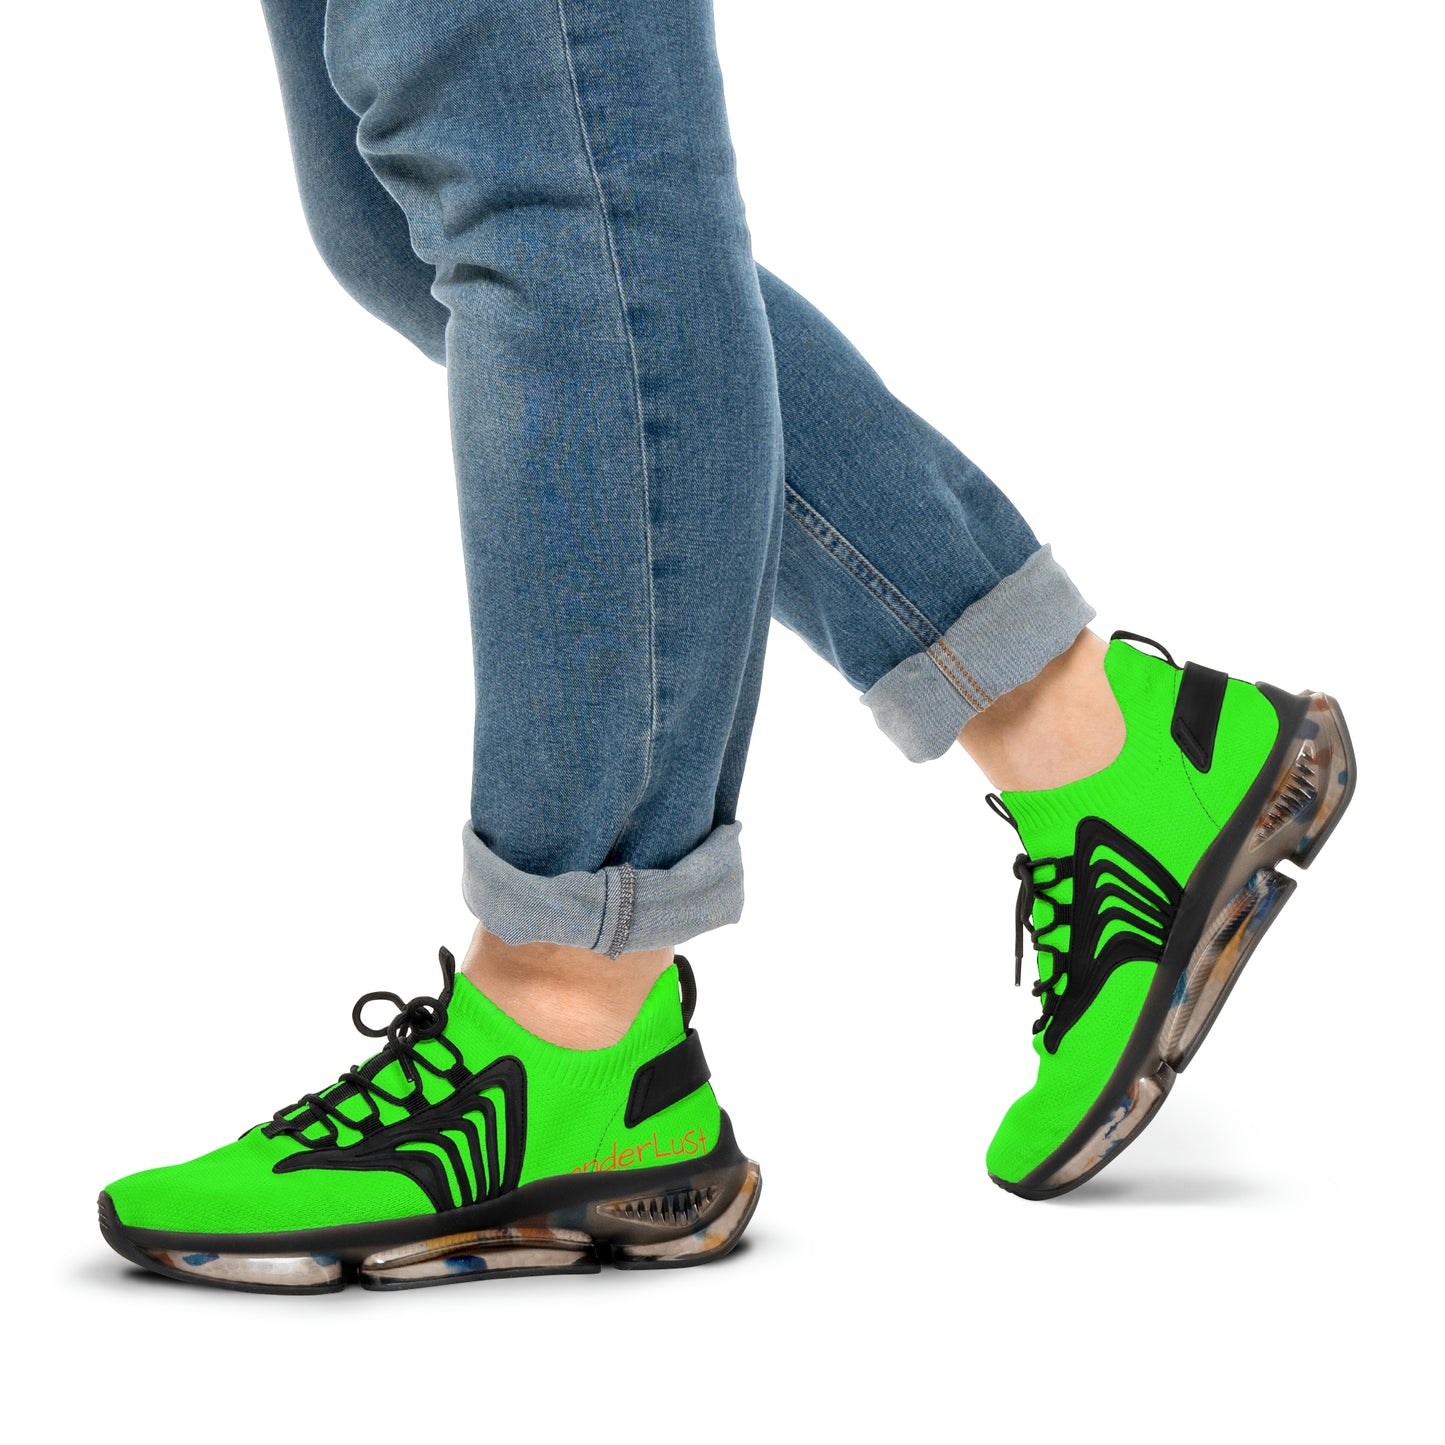 Neon Green UV Glow Men's Women's Mesh Sneakers